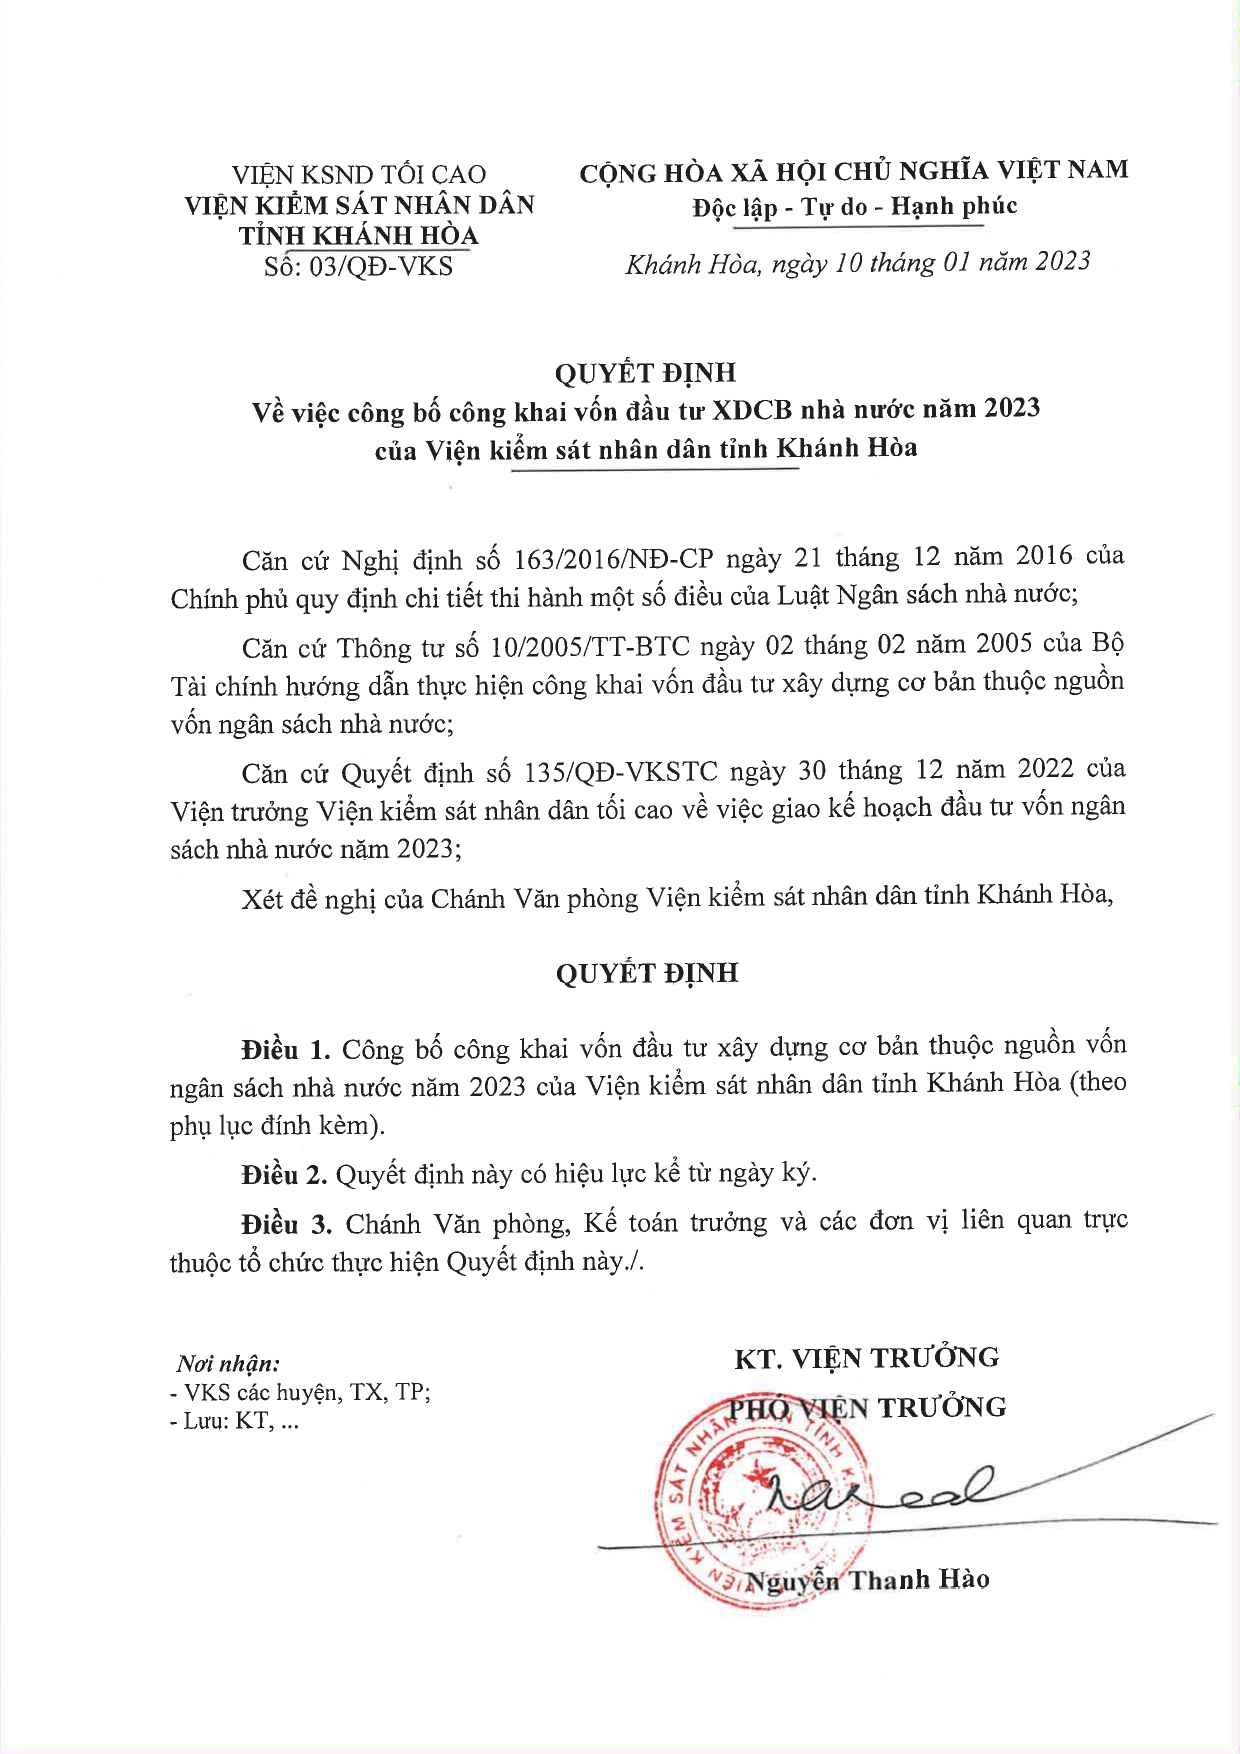 Thông báo về việc công bố công khai vốn đầu tư xây dựng cơ bản nhà nước năm 2023 của Viện kiểm sát nhân dân tỉnh Khánh Hòa